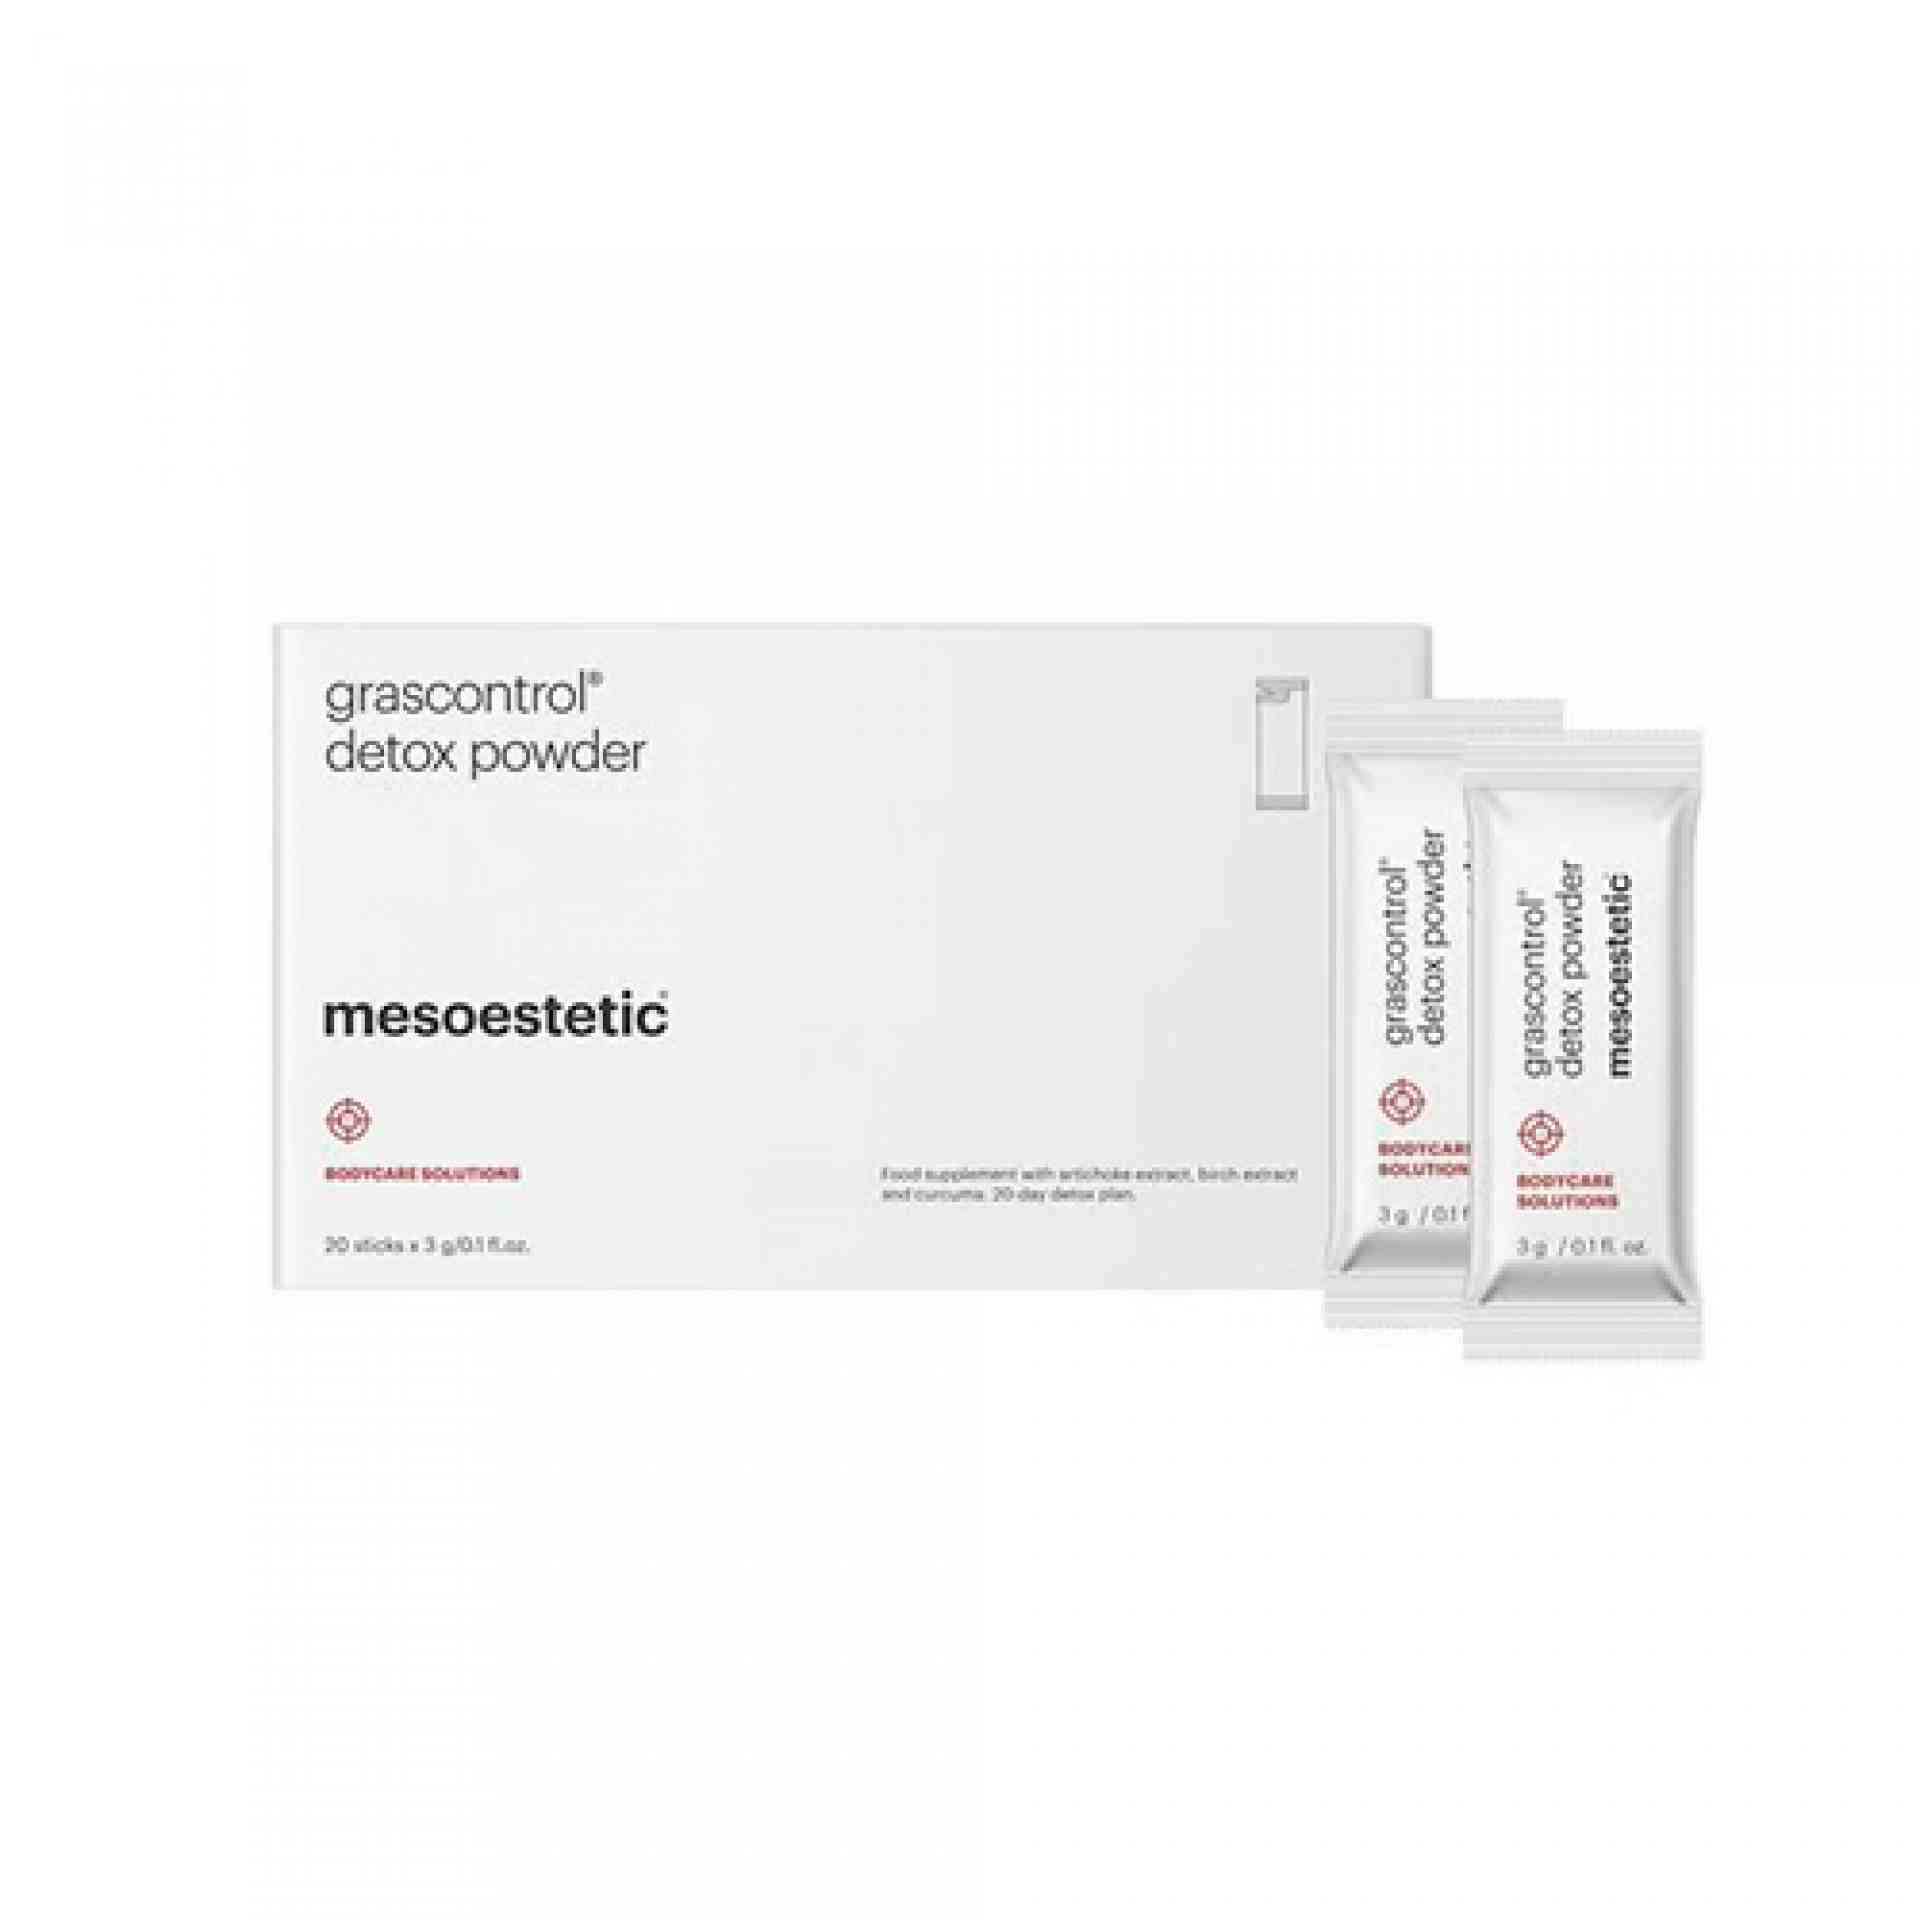 detox powder | complemento alimenticio detoxificante 20x3 g - grascontrol - mesoestetic ®